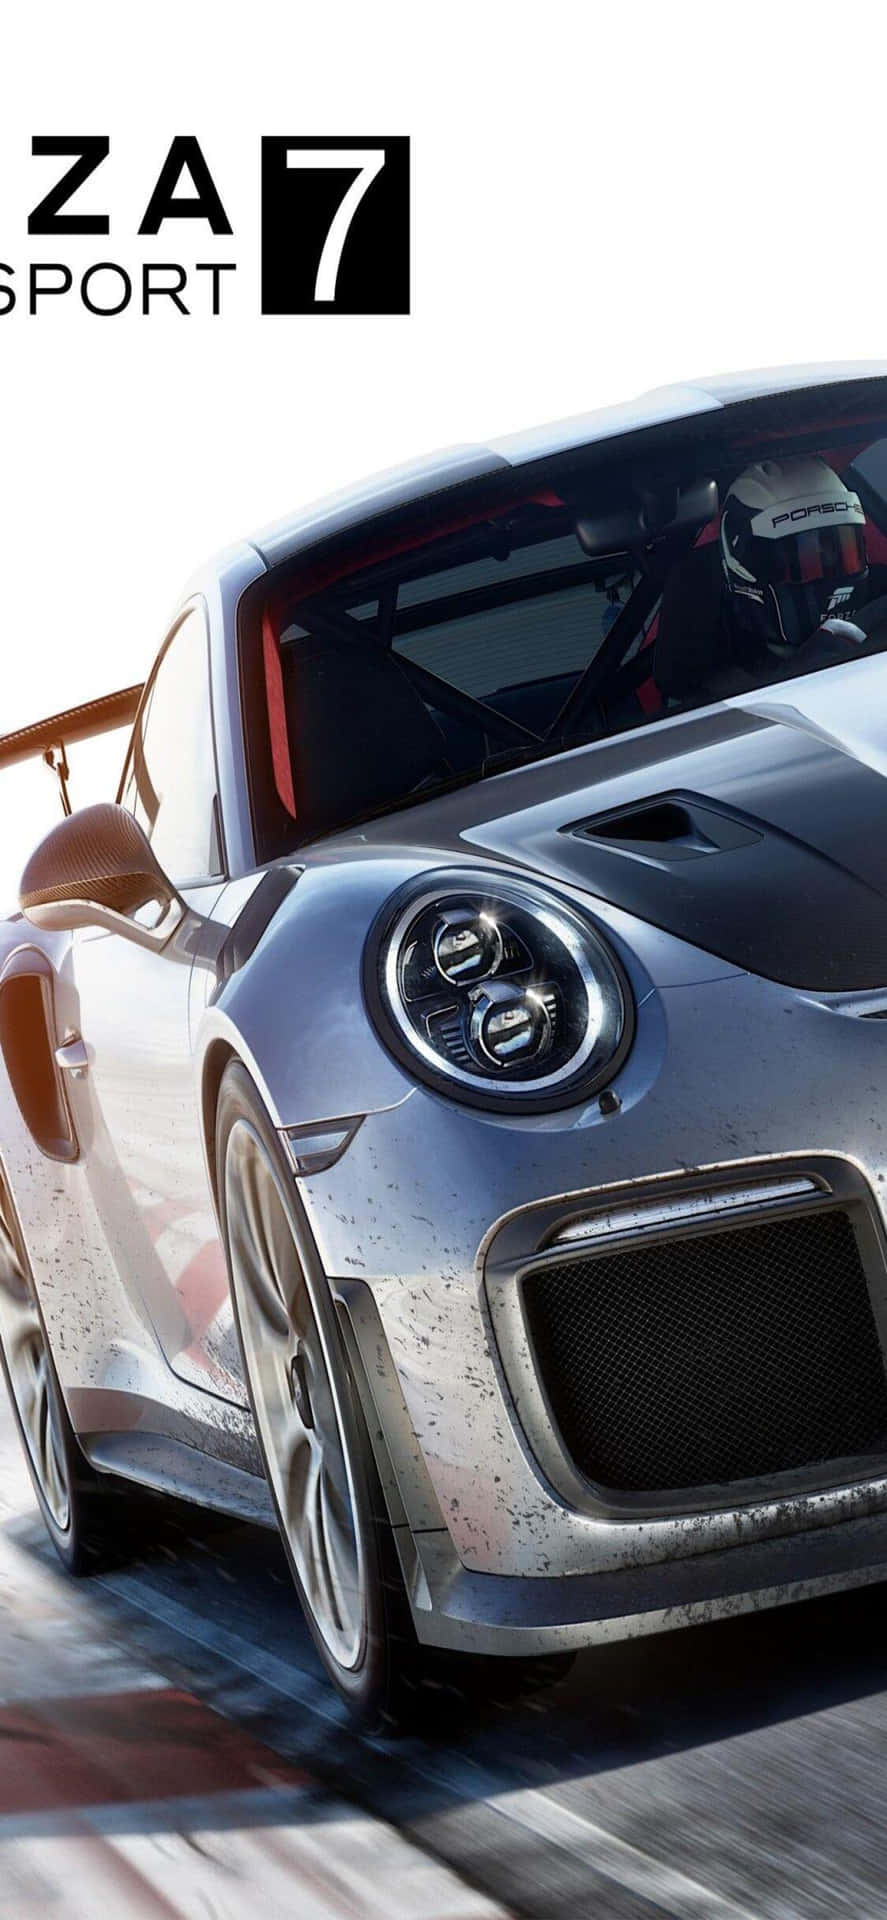 Fondode Pantalla De Porsche 911 Para Iphone X En Forza Motorsport 7.